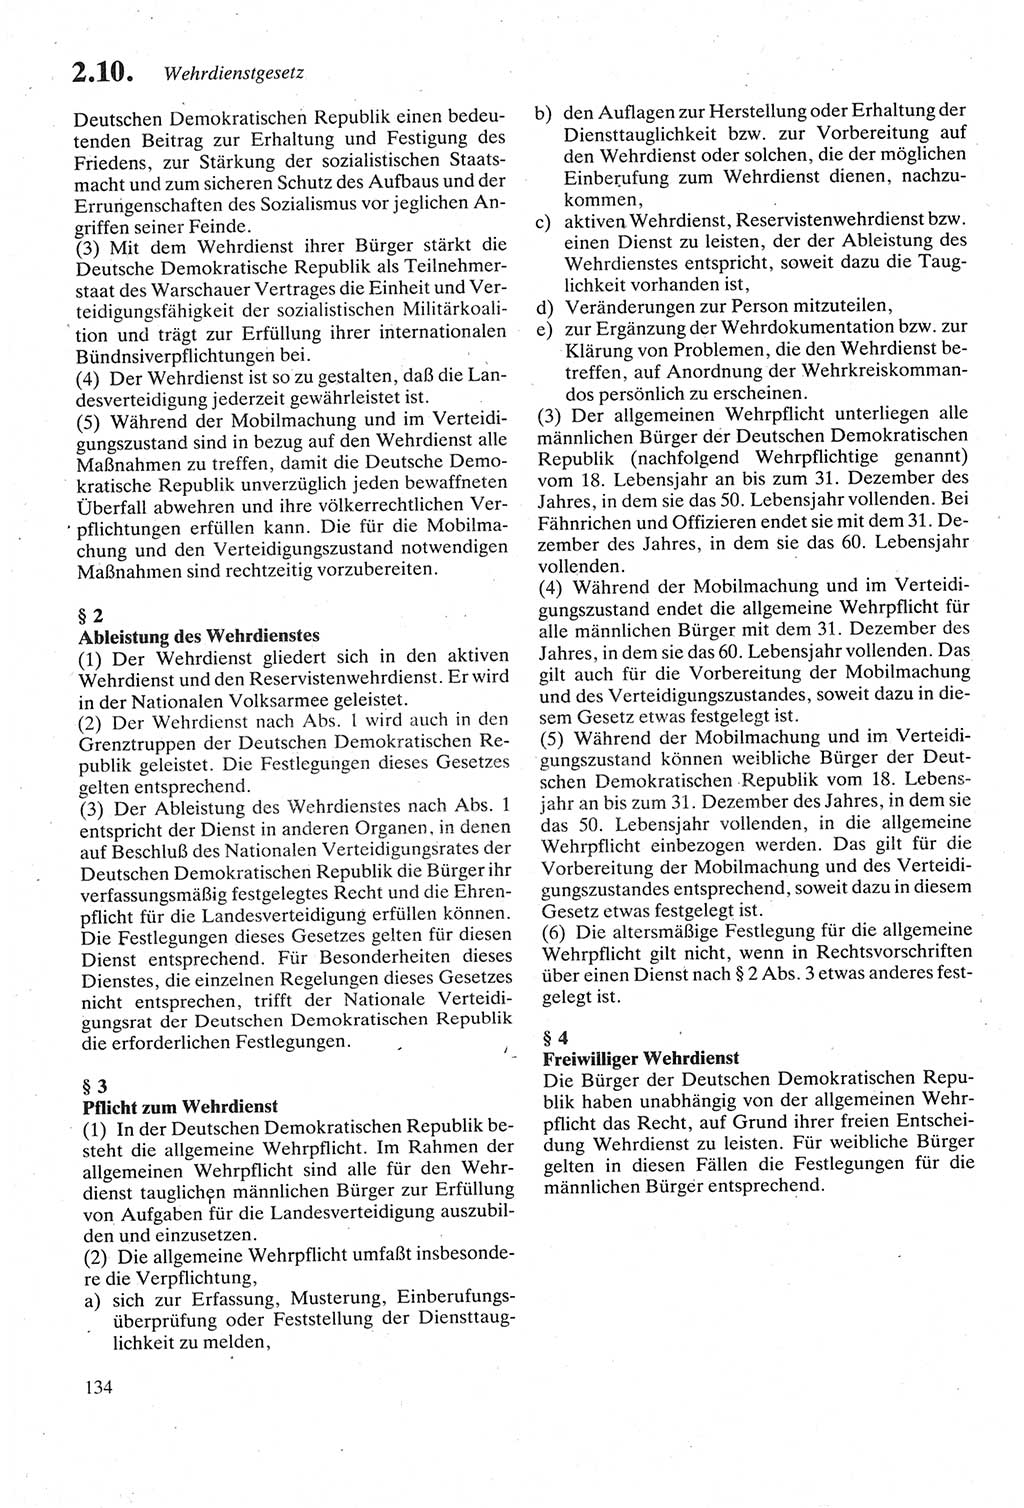 Strafgesetzbuch (StGB) der Deutschen Demokratischen Republik (DDR) sowie angrenzende Gesetze und Bestimmungen 1979, Seite 134 (StGB DDR Ges. Best. 1979, S. 134)